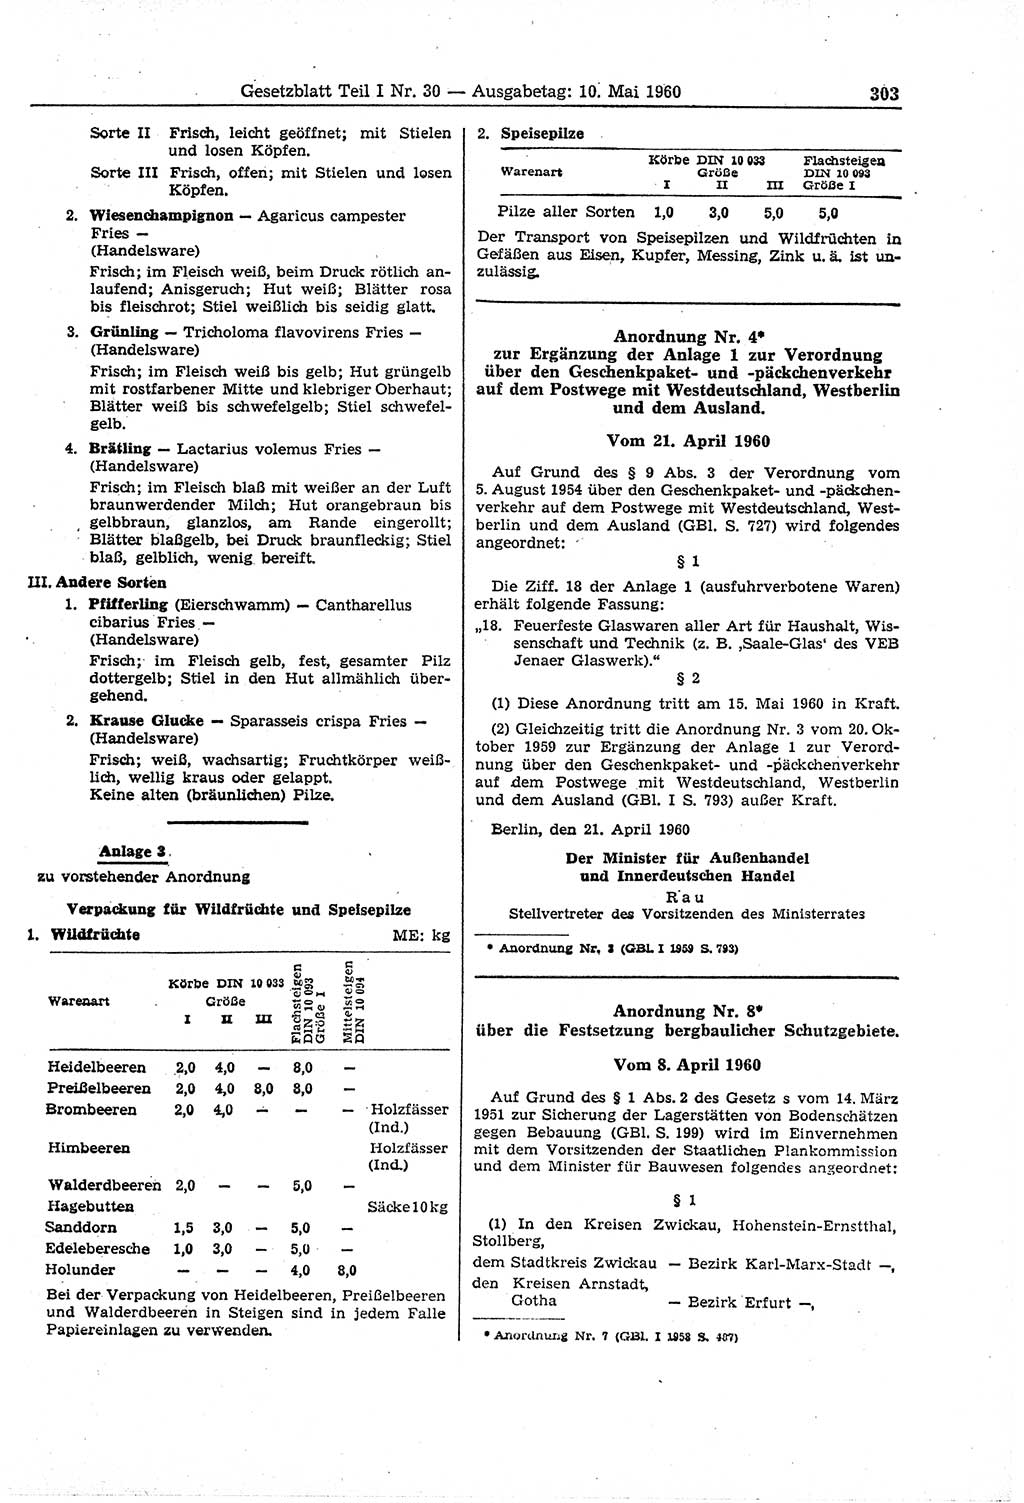 Gesetzblatt (GBl.) der Deutschen Demokratischen Republik (DDR) Teil Ⅰ 1960, Seite 303 (GBl. DDR Ⅰ 1960, S. 303)